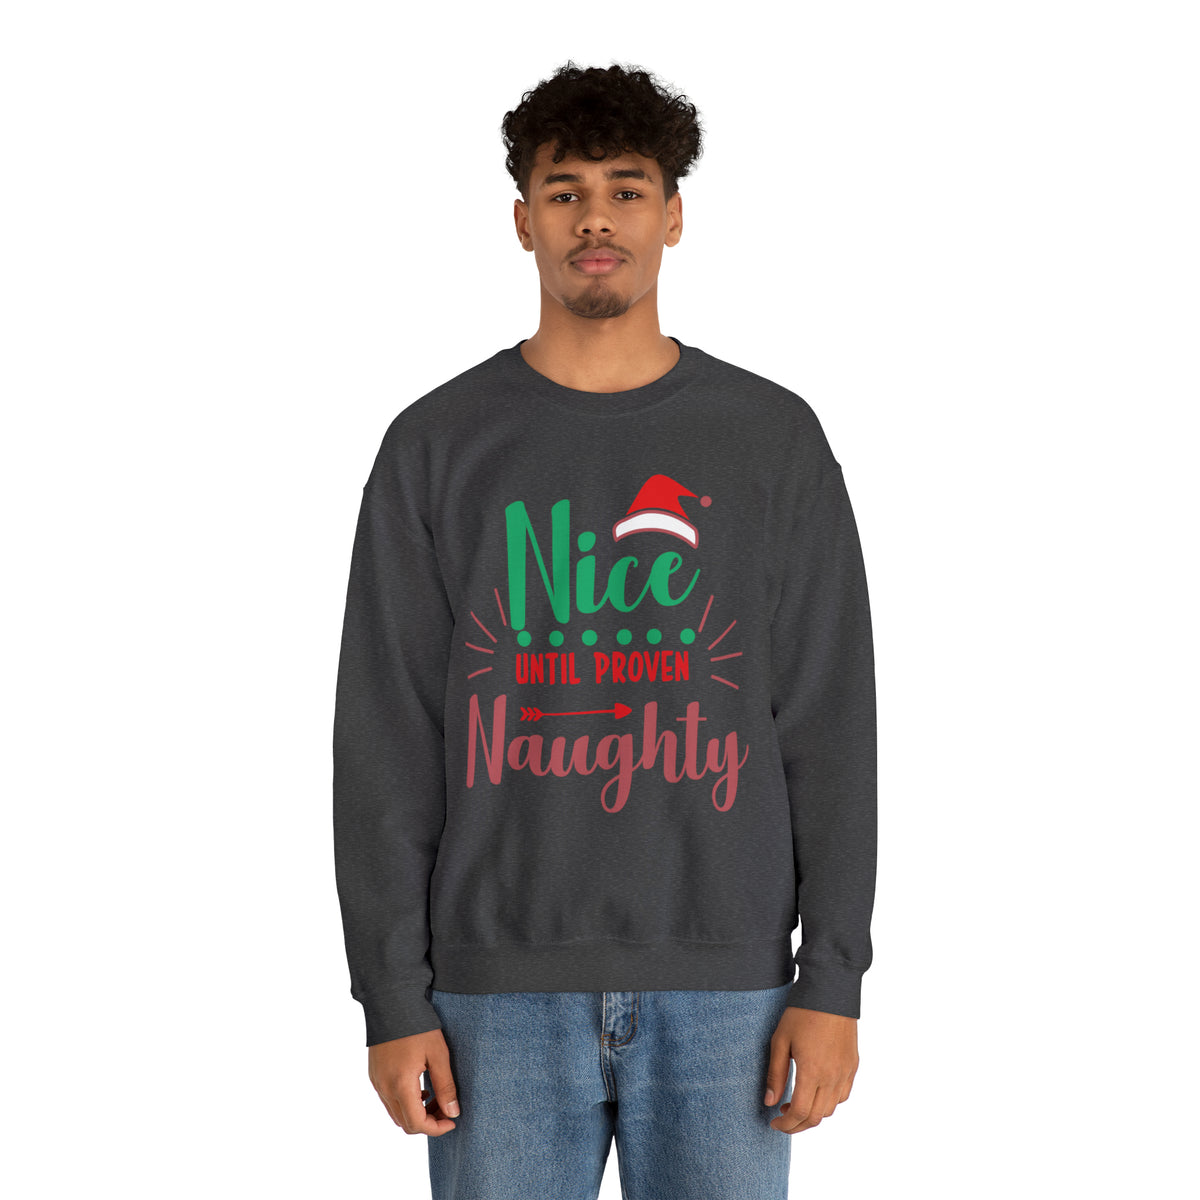 Nice Until Proven Naughty Christmas Sweatshirt, Christmas Sweater, Christmas Party Outfit, Holiday Gifts, Funny Christmas Sweater, Ugly Sweater, Holiday Sweatshirt